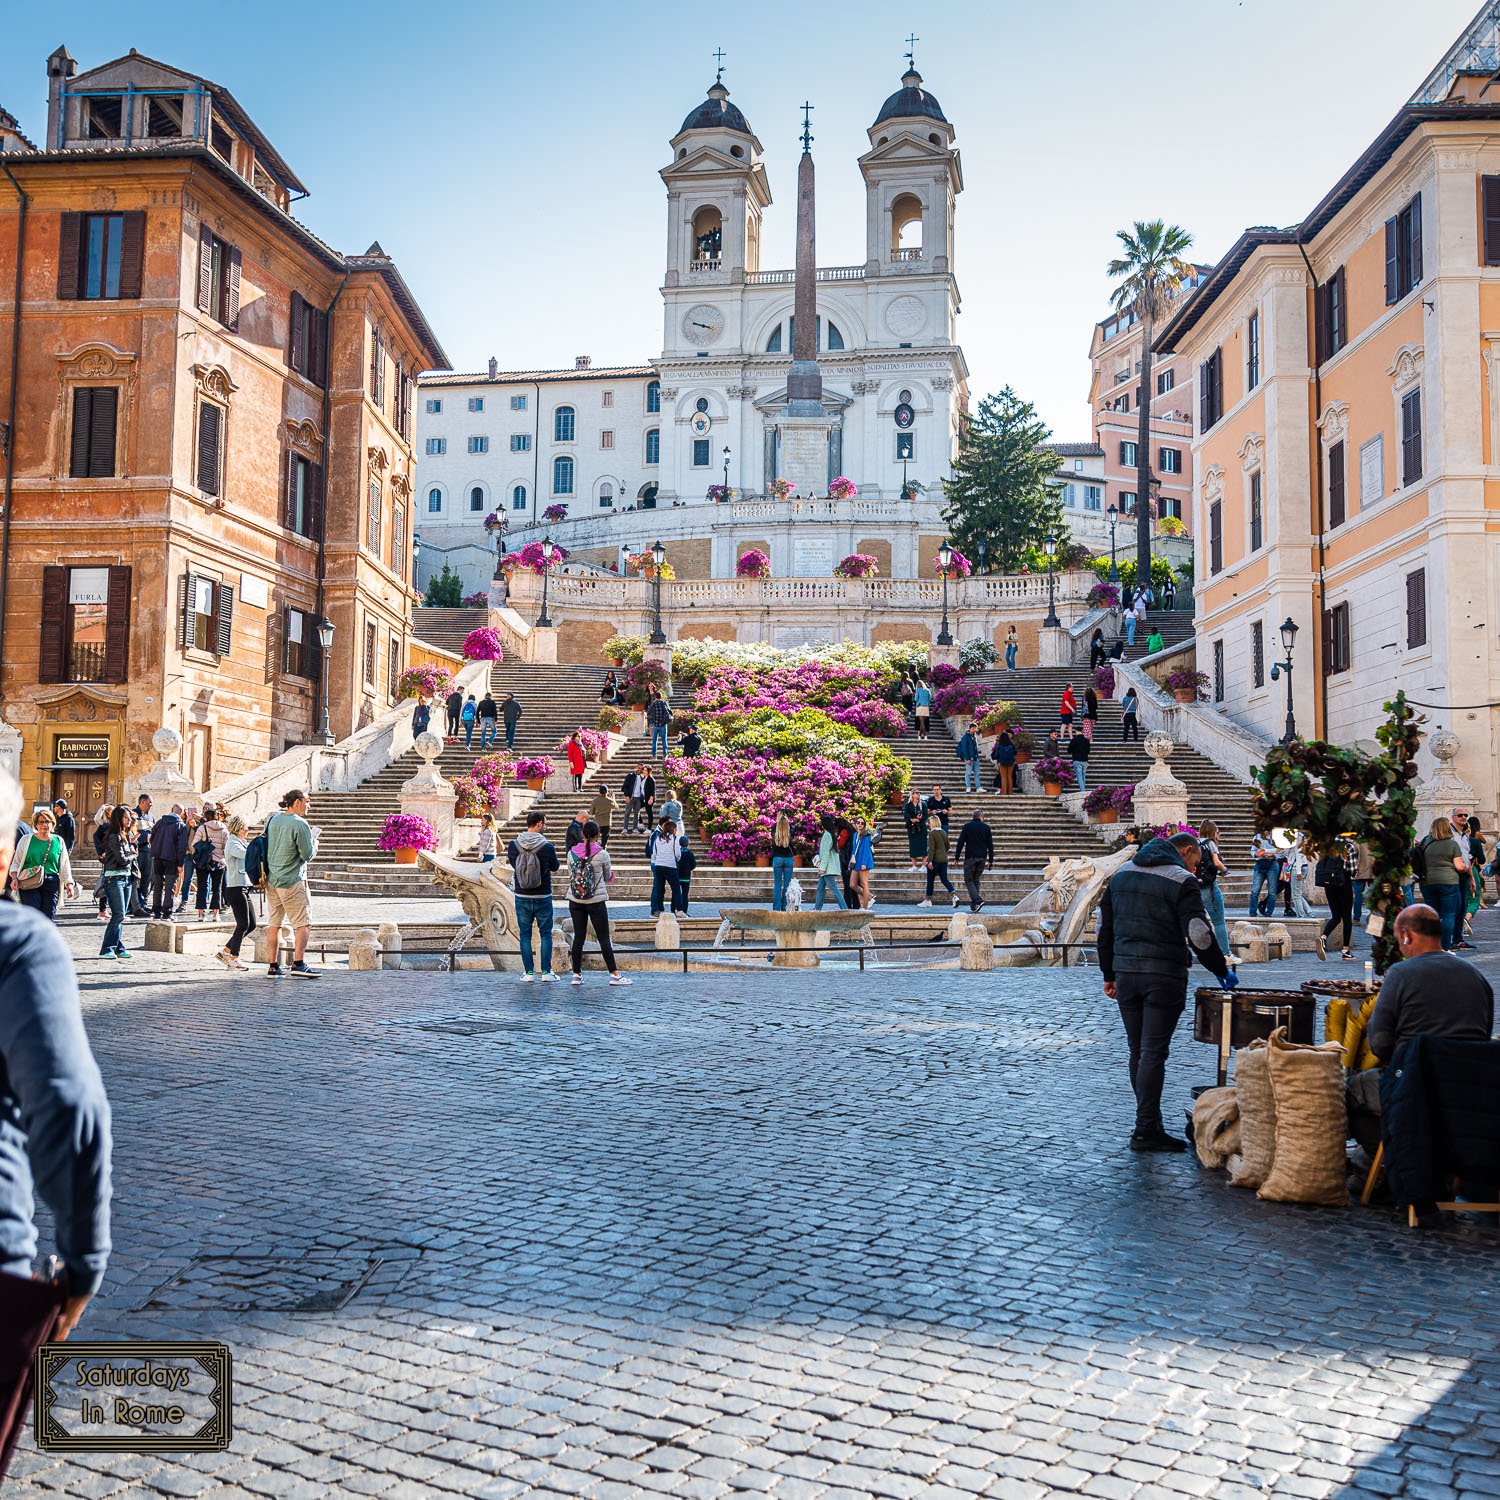 Tourist behavior in Italy - Bad Behavior